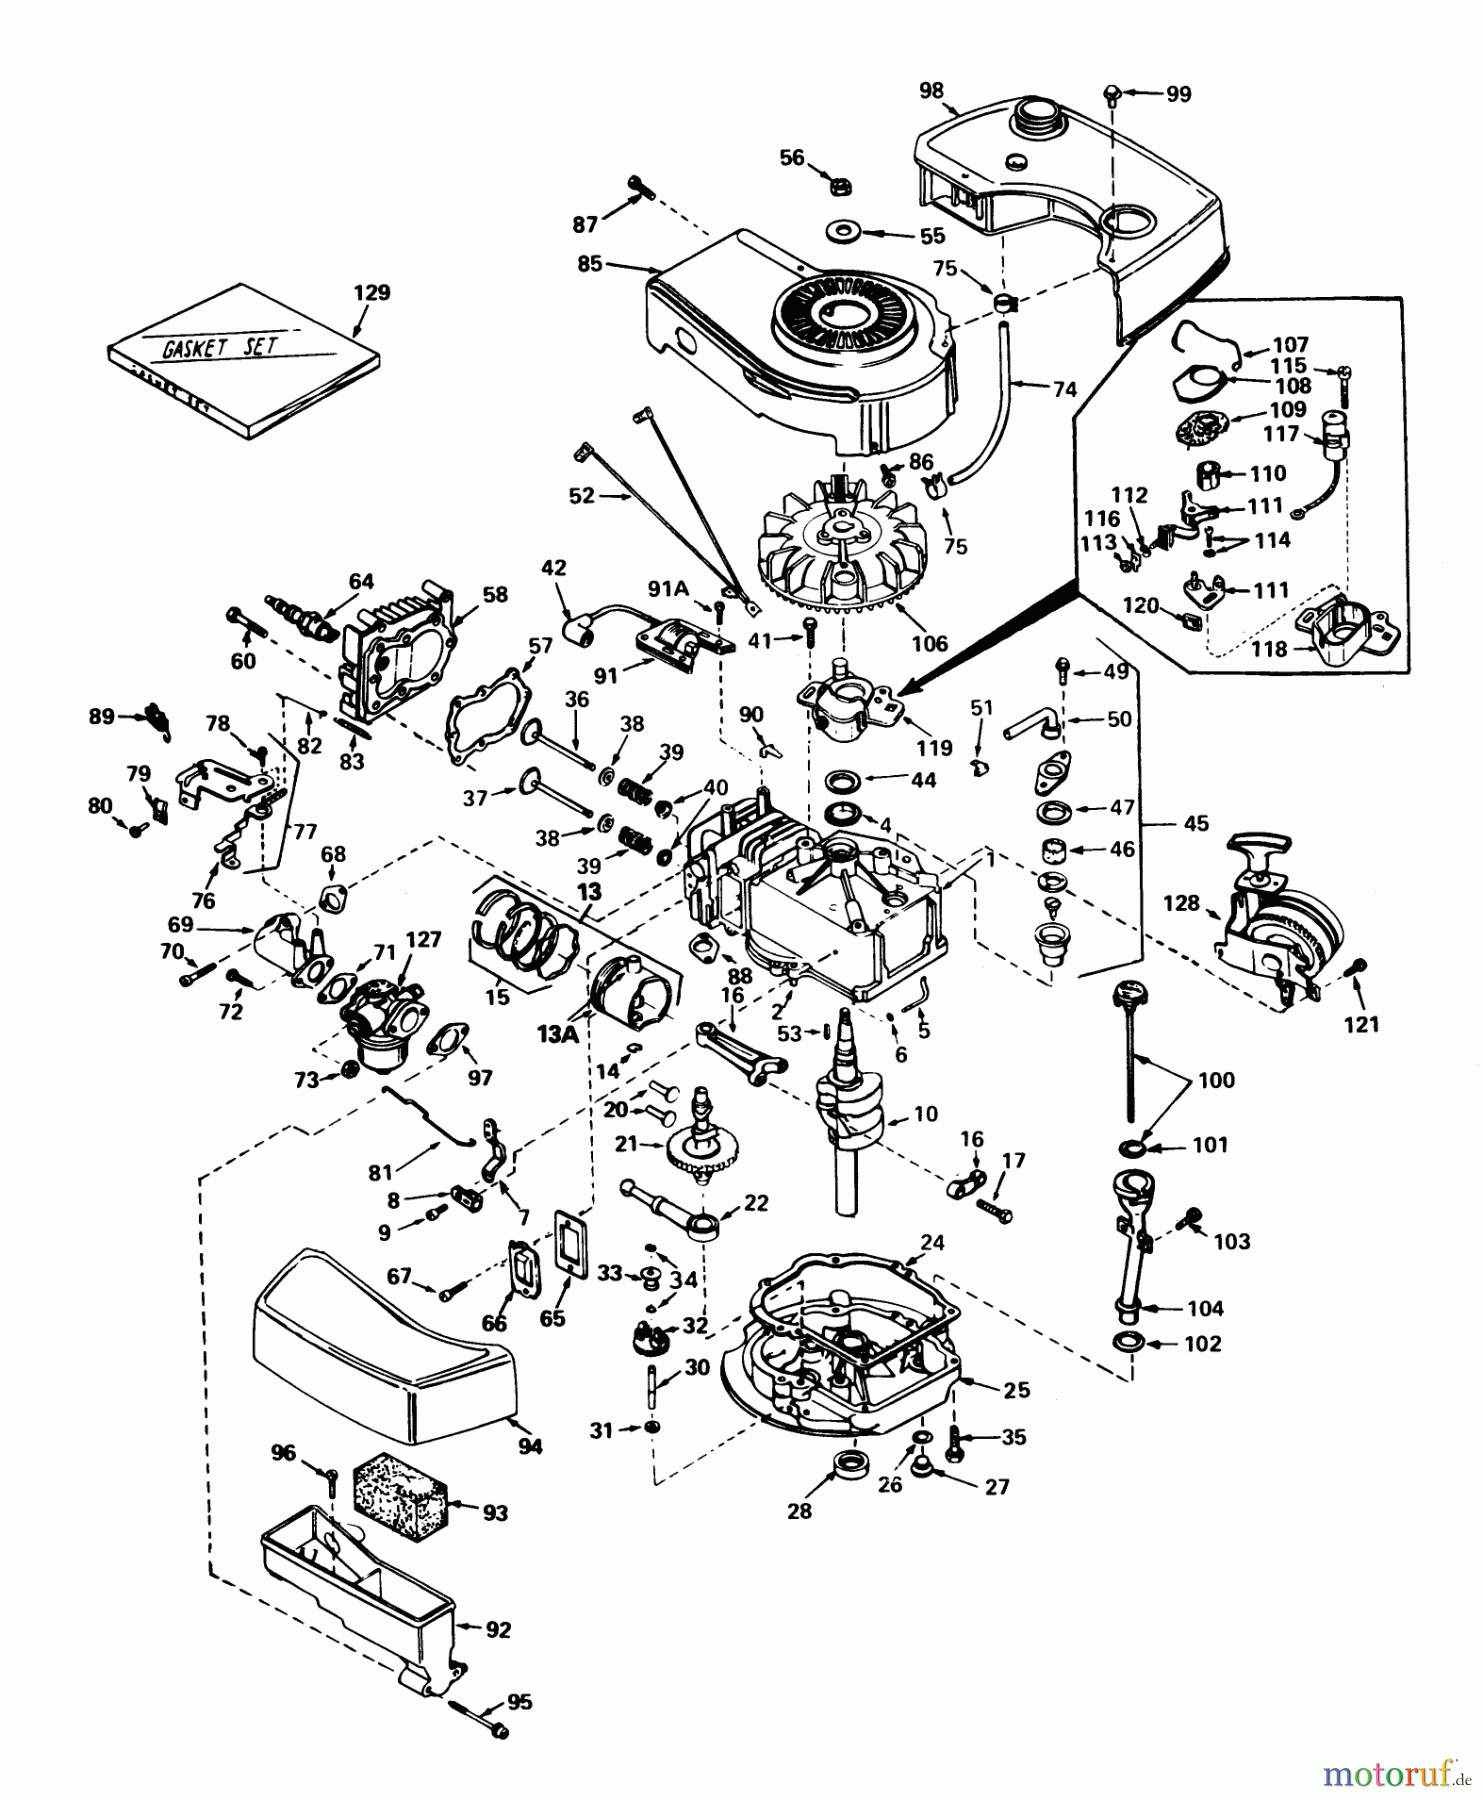  Toro Neu Mowers, Walk-Behind Seite 1 20758 - Toro Lawnmower, 1980 (0000001-0999999) ENGINE TECUMSEH MODEL NO. TNT 100-10068C